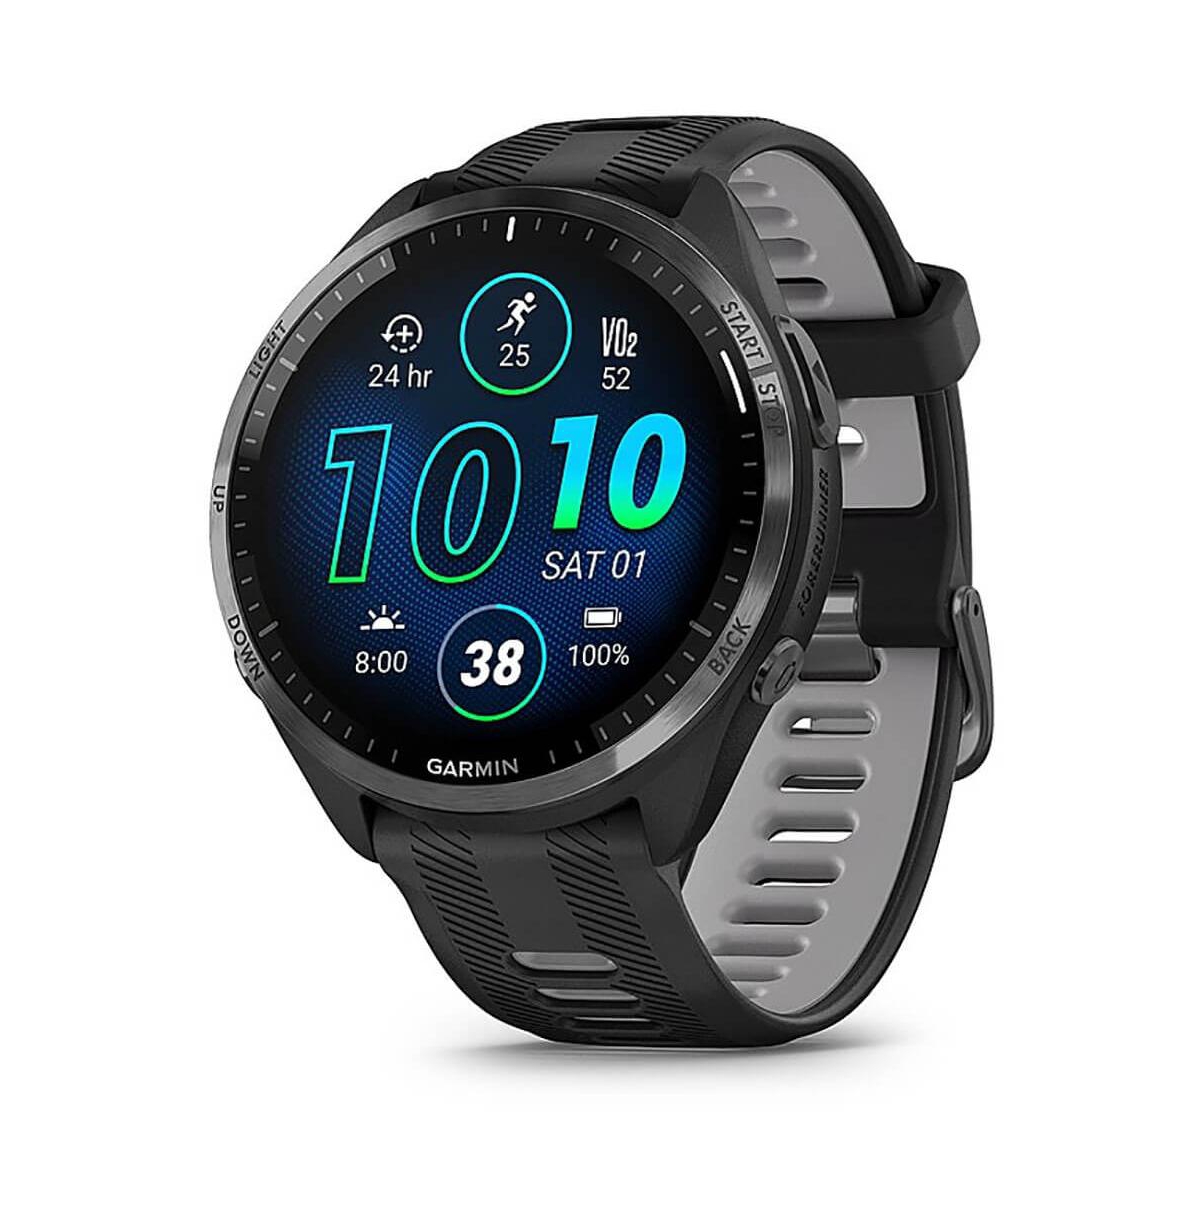 Garming Titanium Bezel Running Watch With Silicone Carbon Gray Strap Unisex Smart watch - Grey